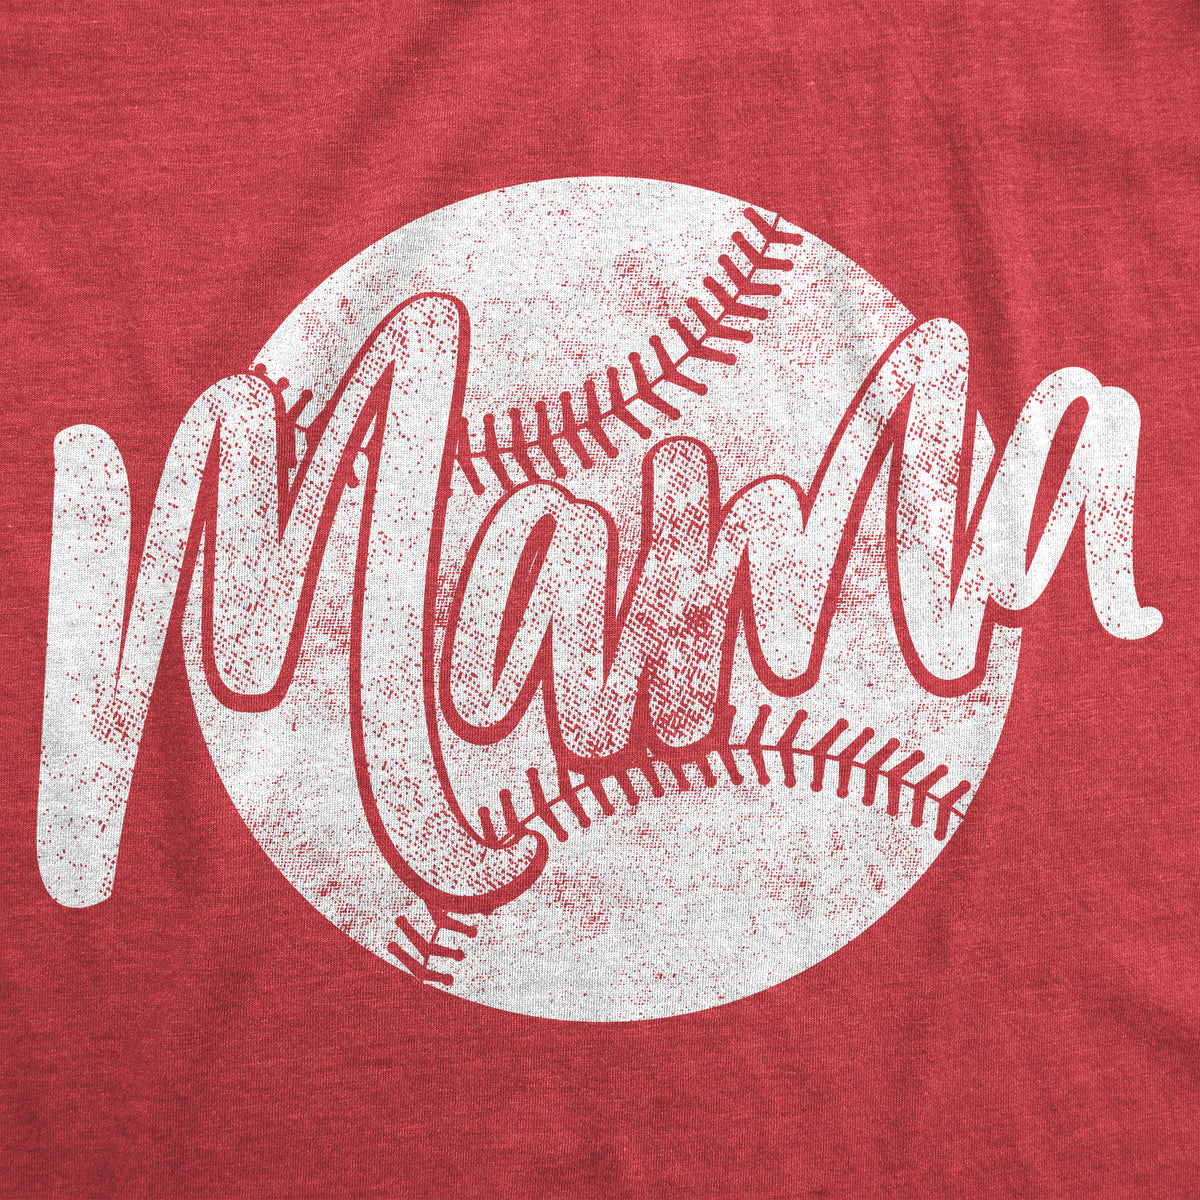 Baseball Mama Maternity T Shirt